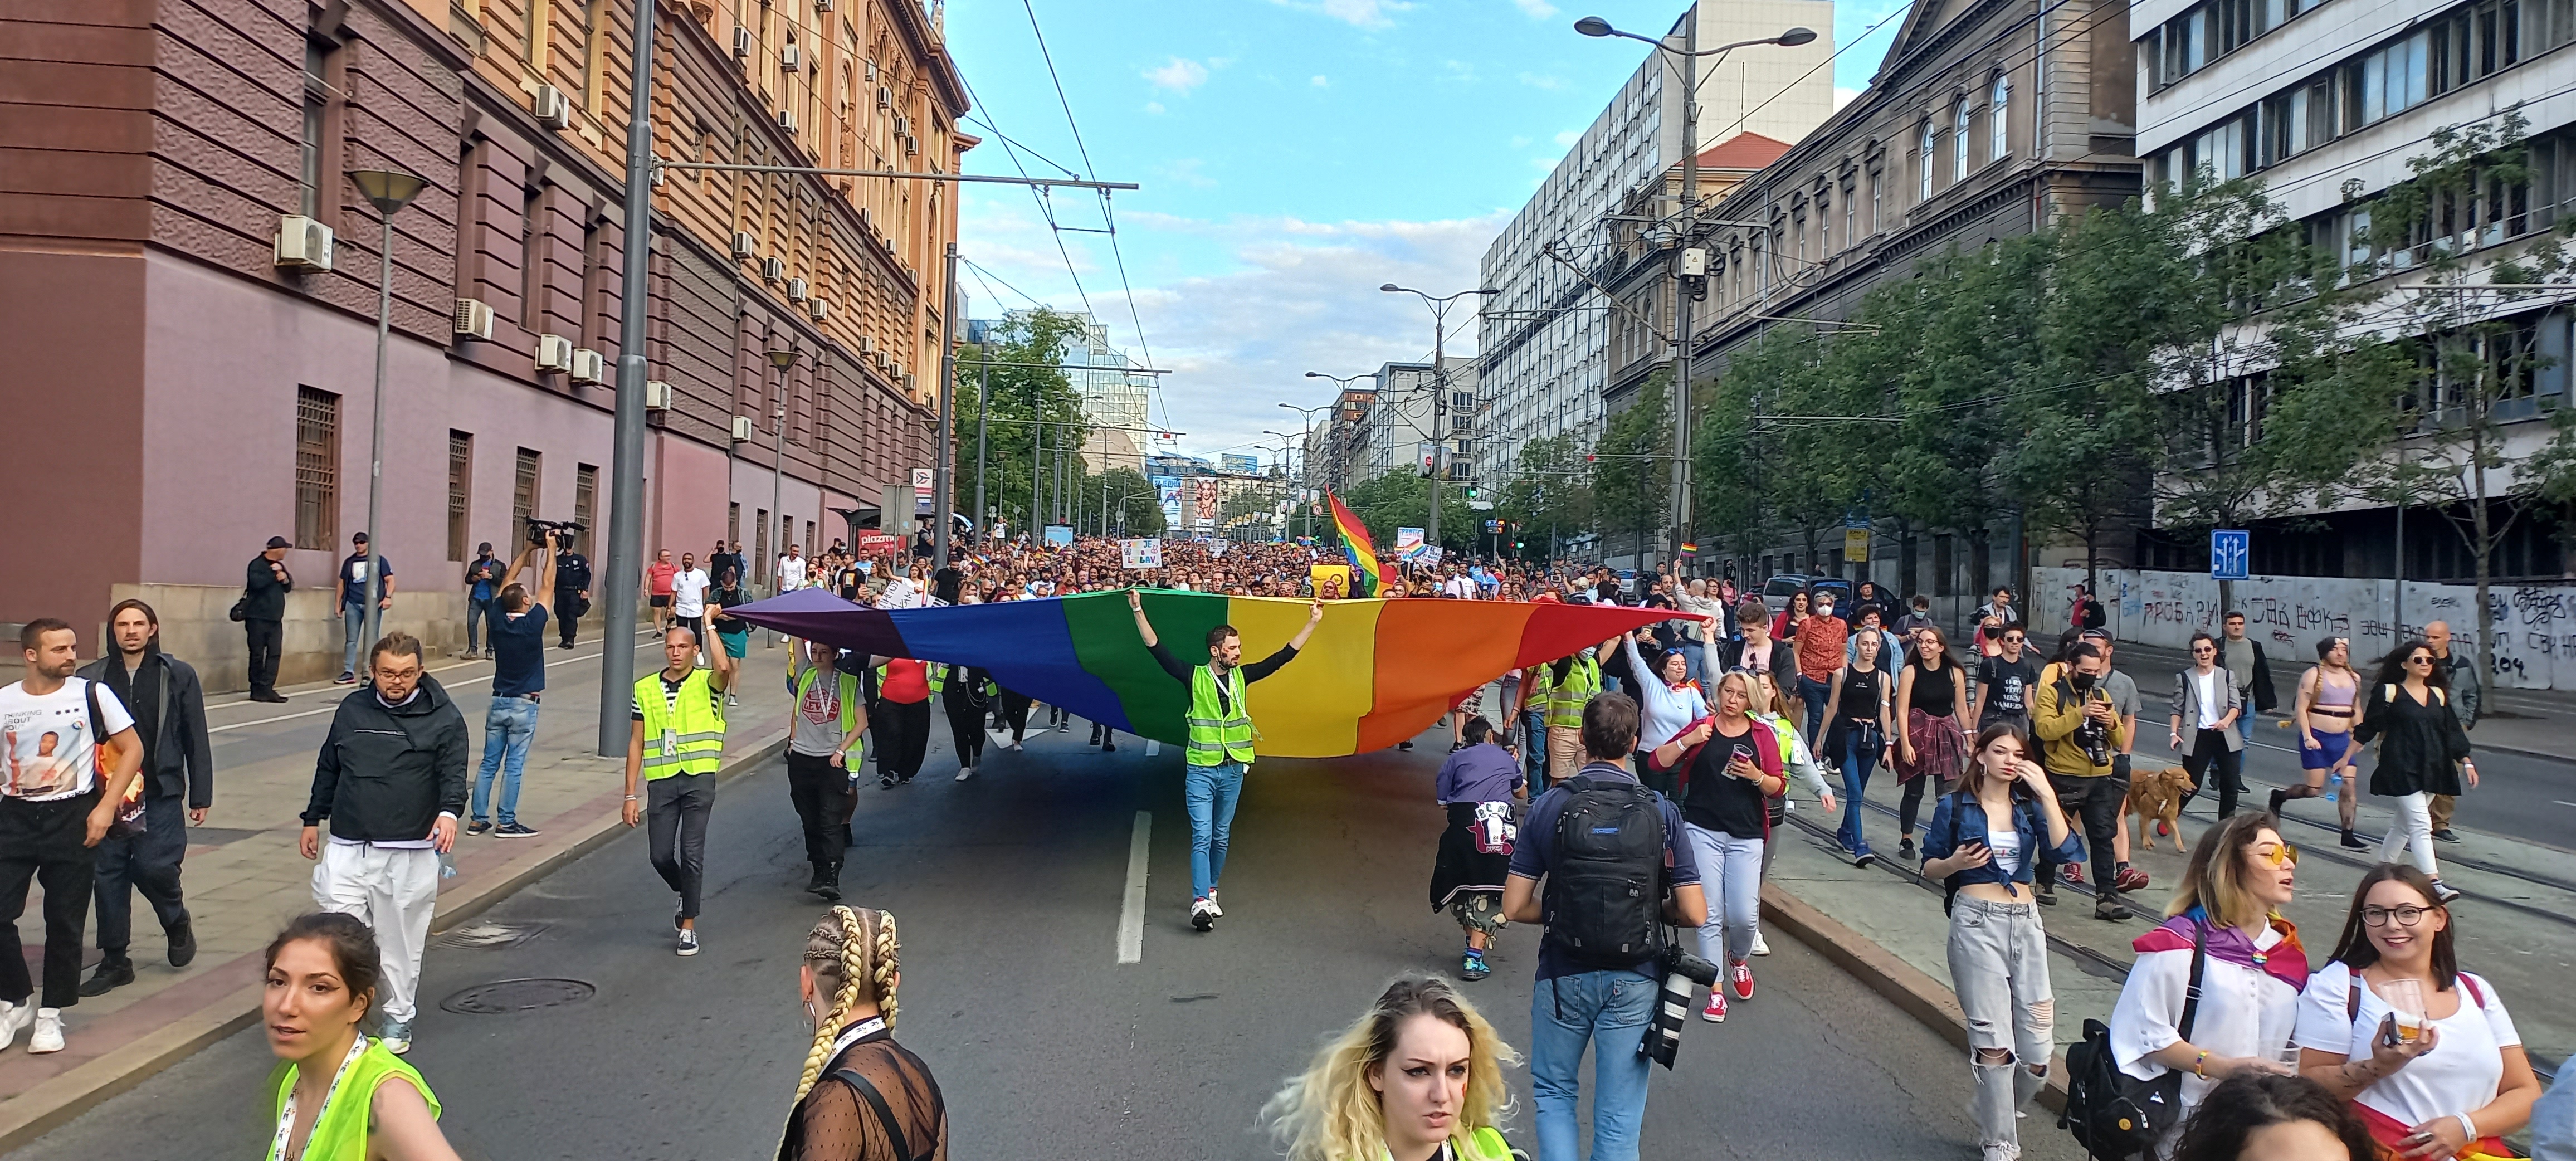 Belgrad Onur Yürüyüşü ve EuroPride iptal edildi | Kaos GL - LGBTİ+ Haber Portalı Haber